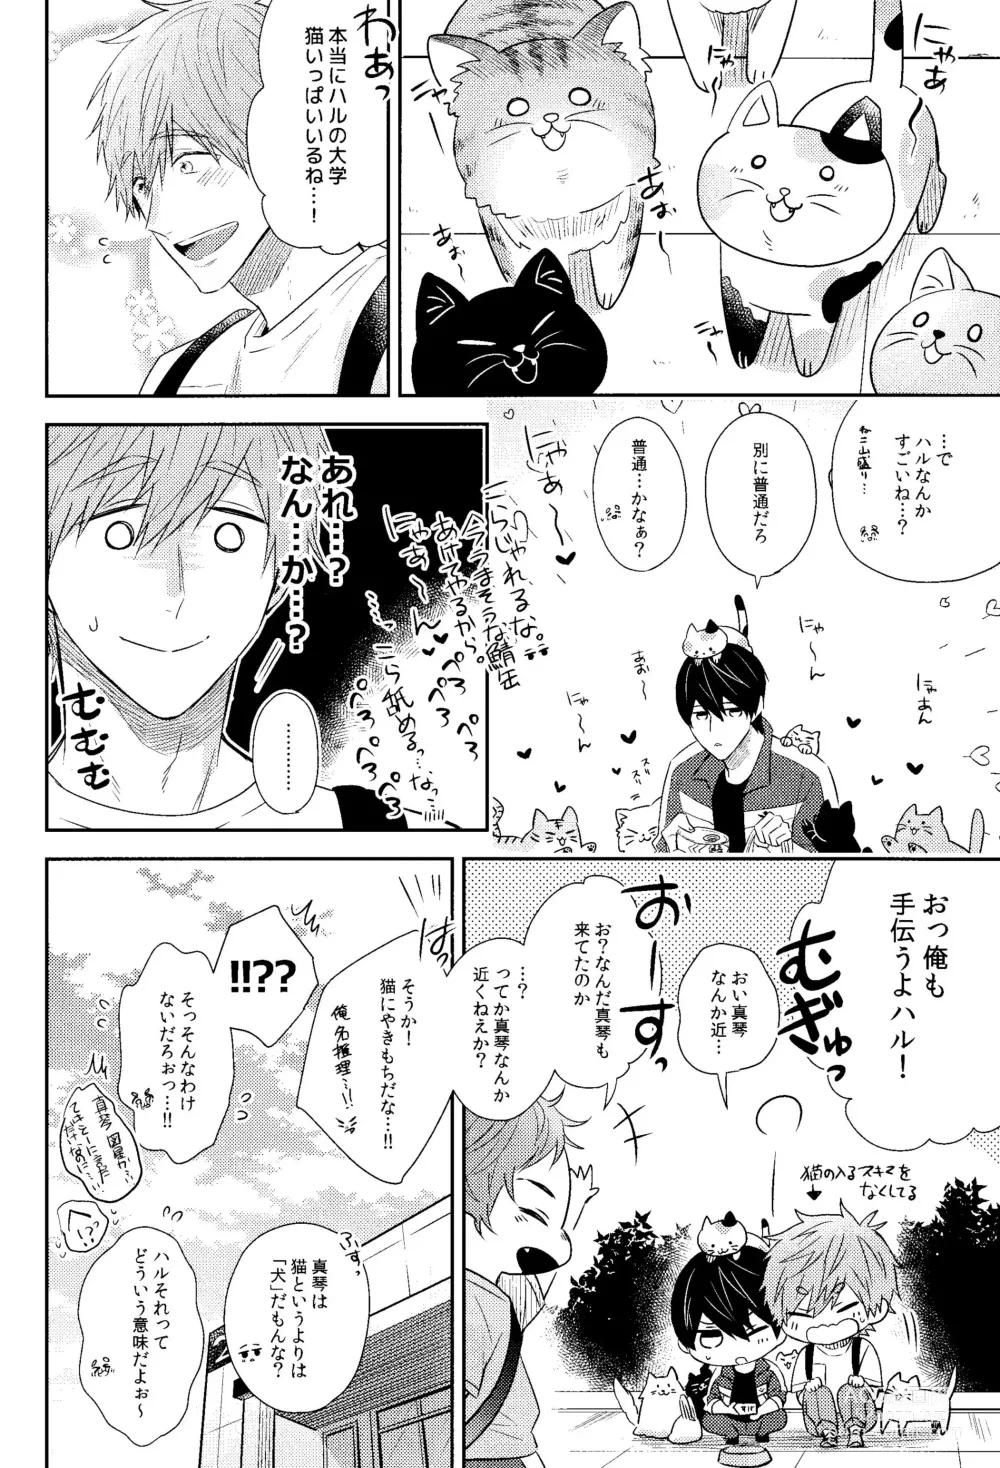 Page 27 of doujinshi Yakimochiyaki no Uchi no Neko